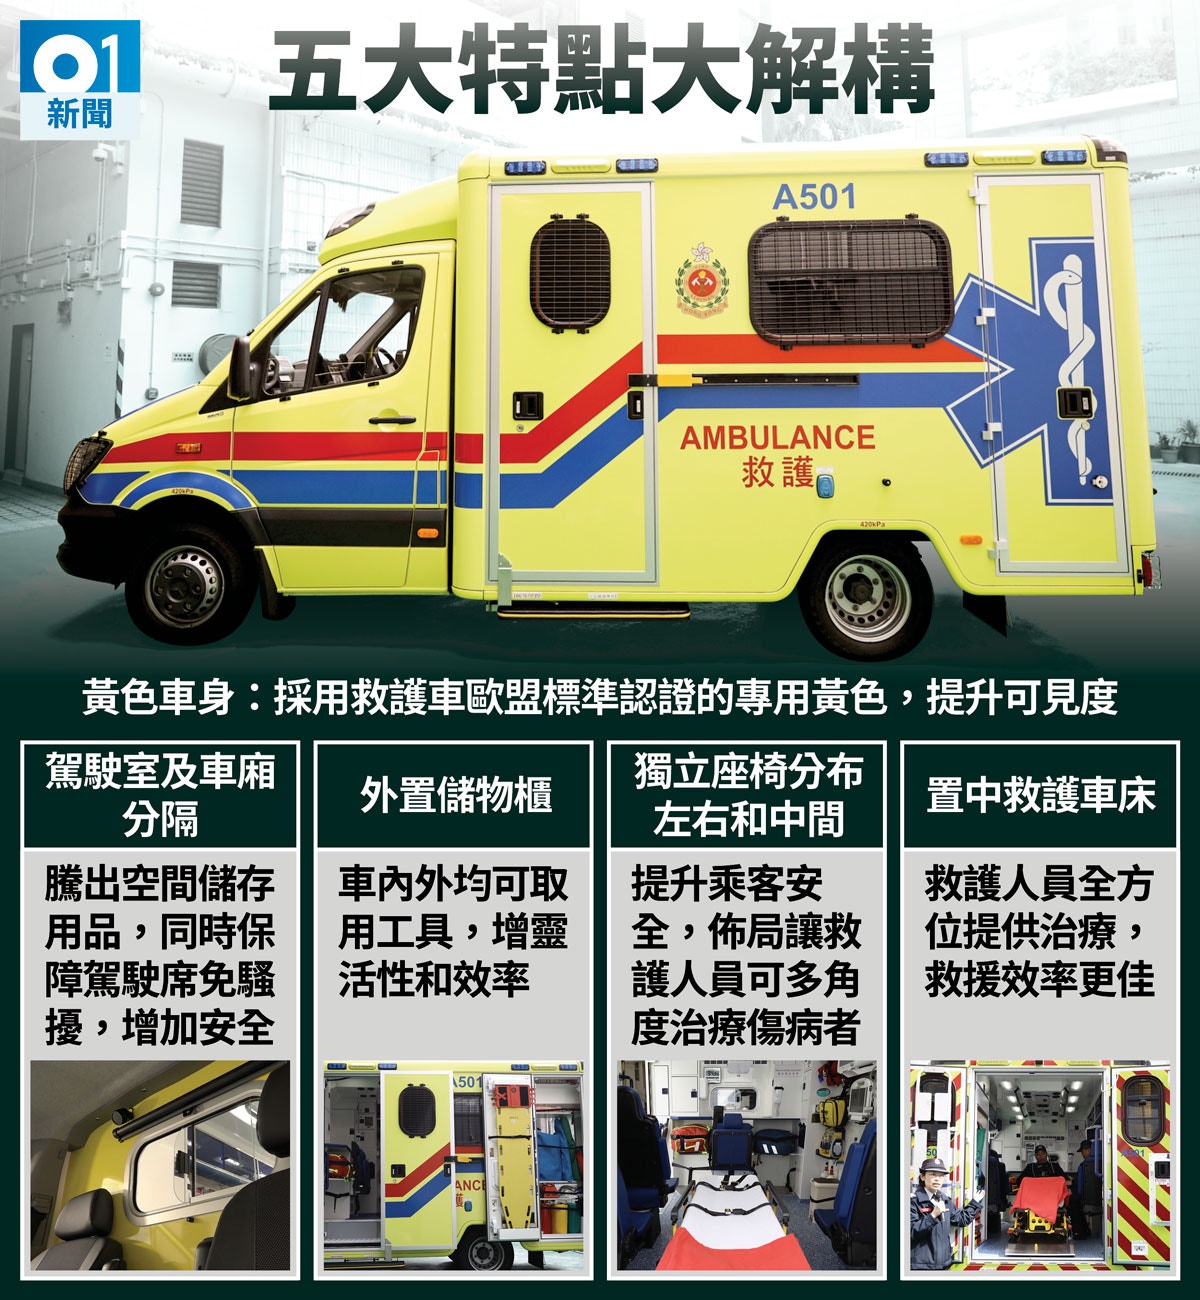 黃色救護車試行每輛100萬5大特色提升安全效率 香港01 社會新聞